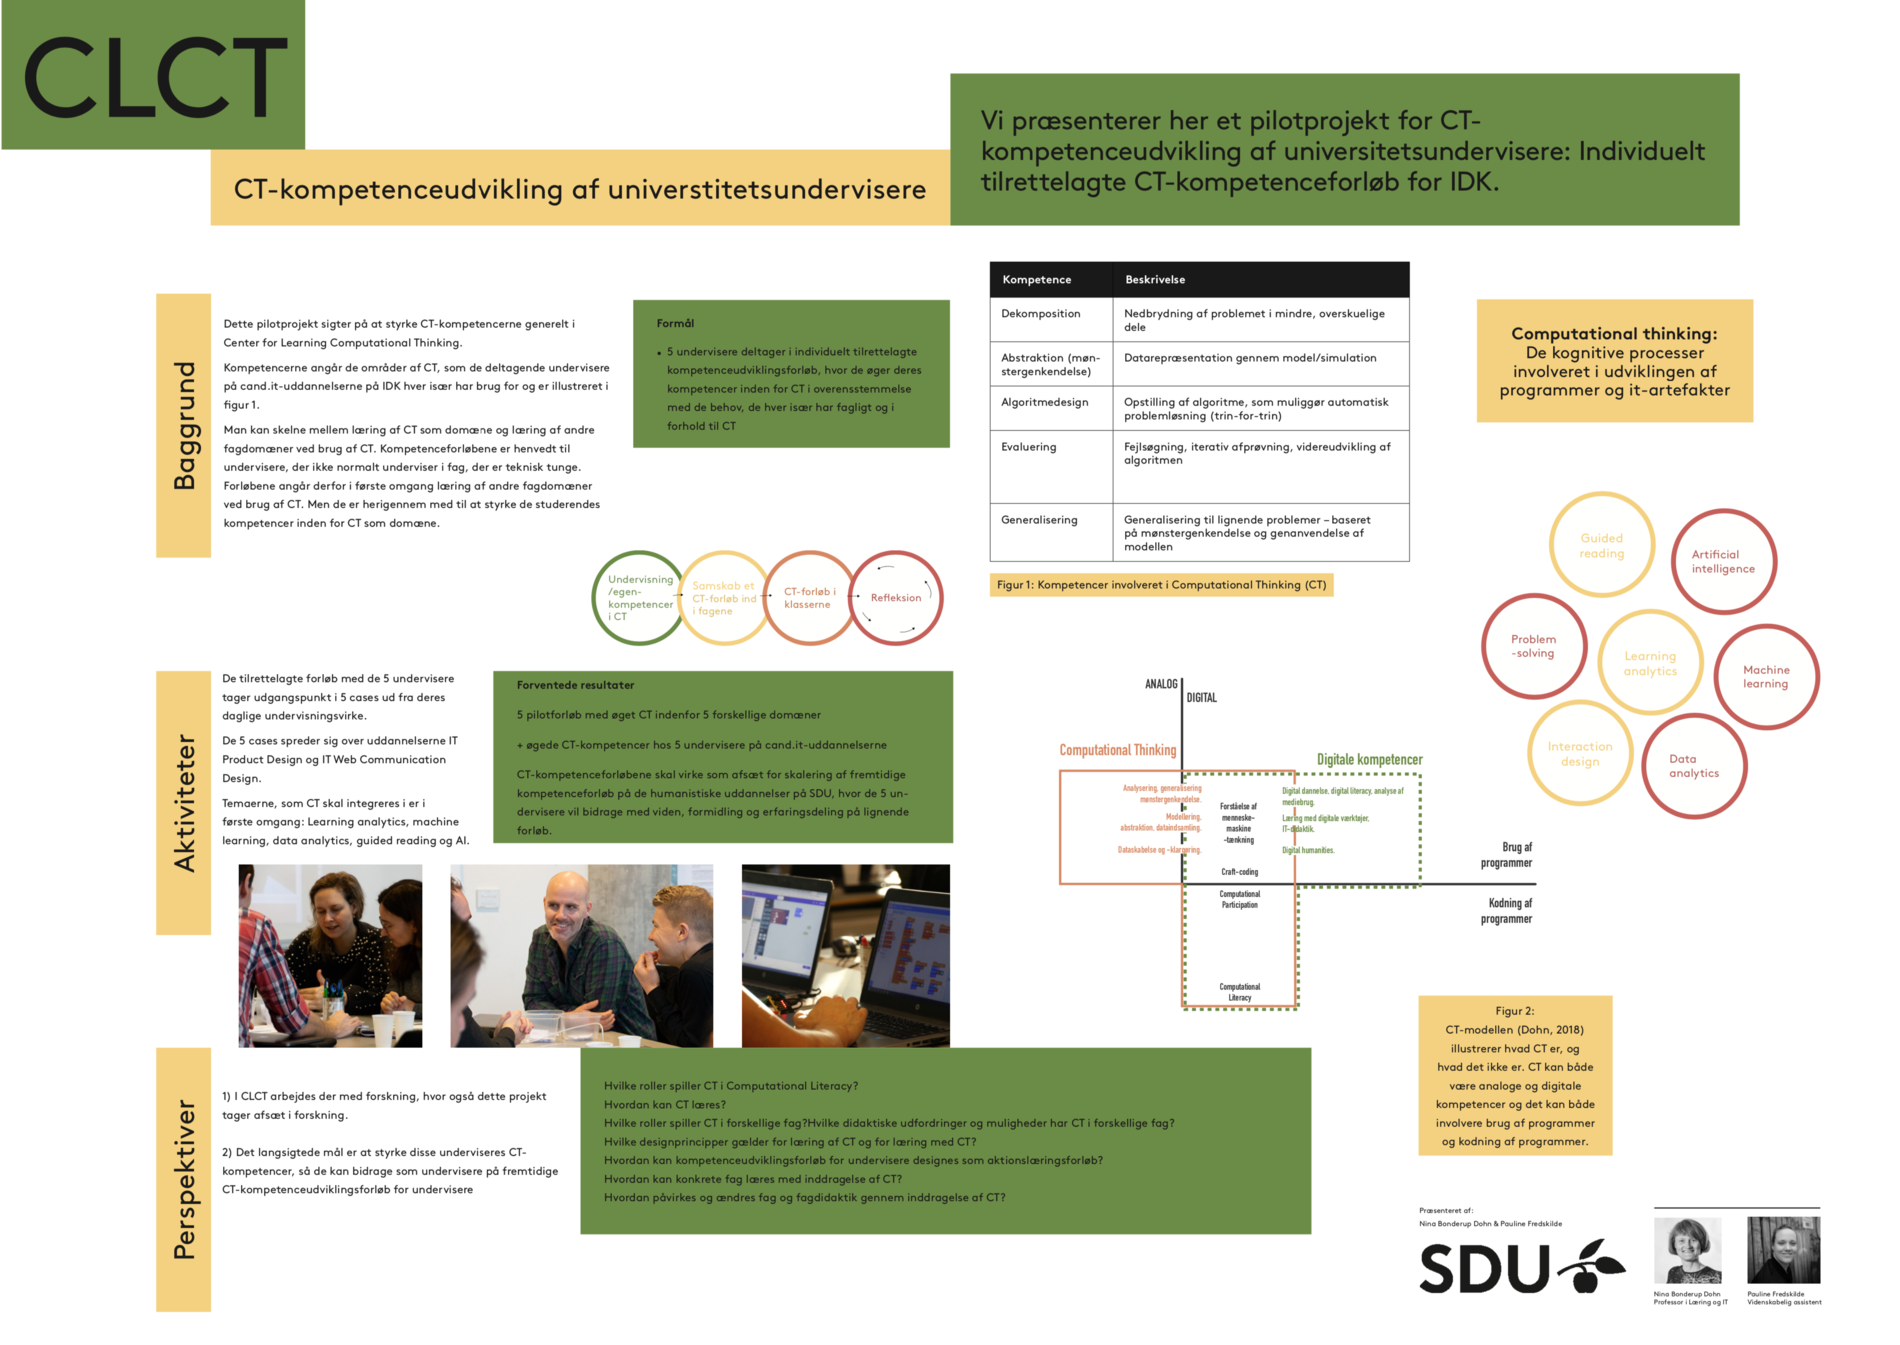 Link til pdf med poster for CT-kompetenceudvikling af universitetsundervisere, SDU